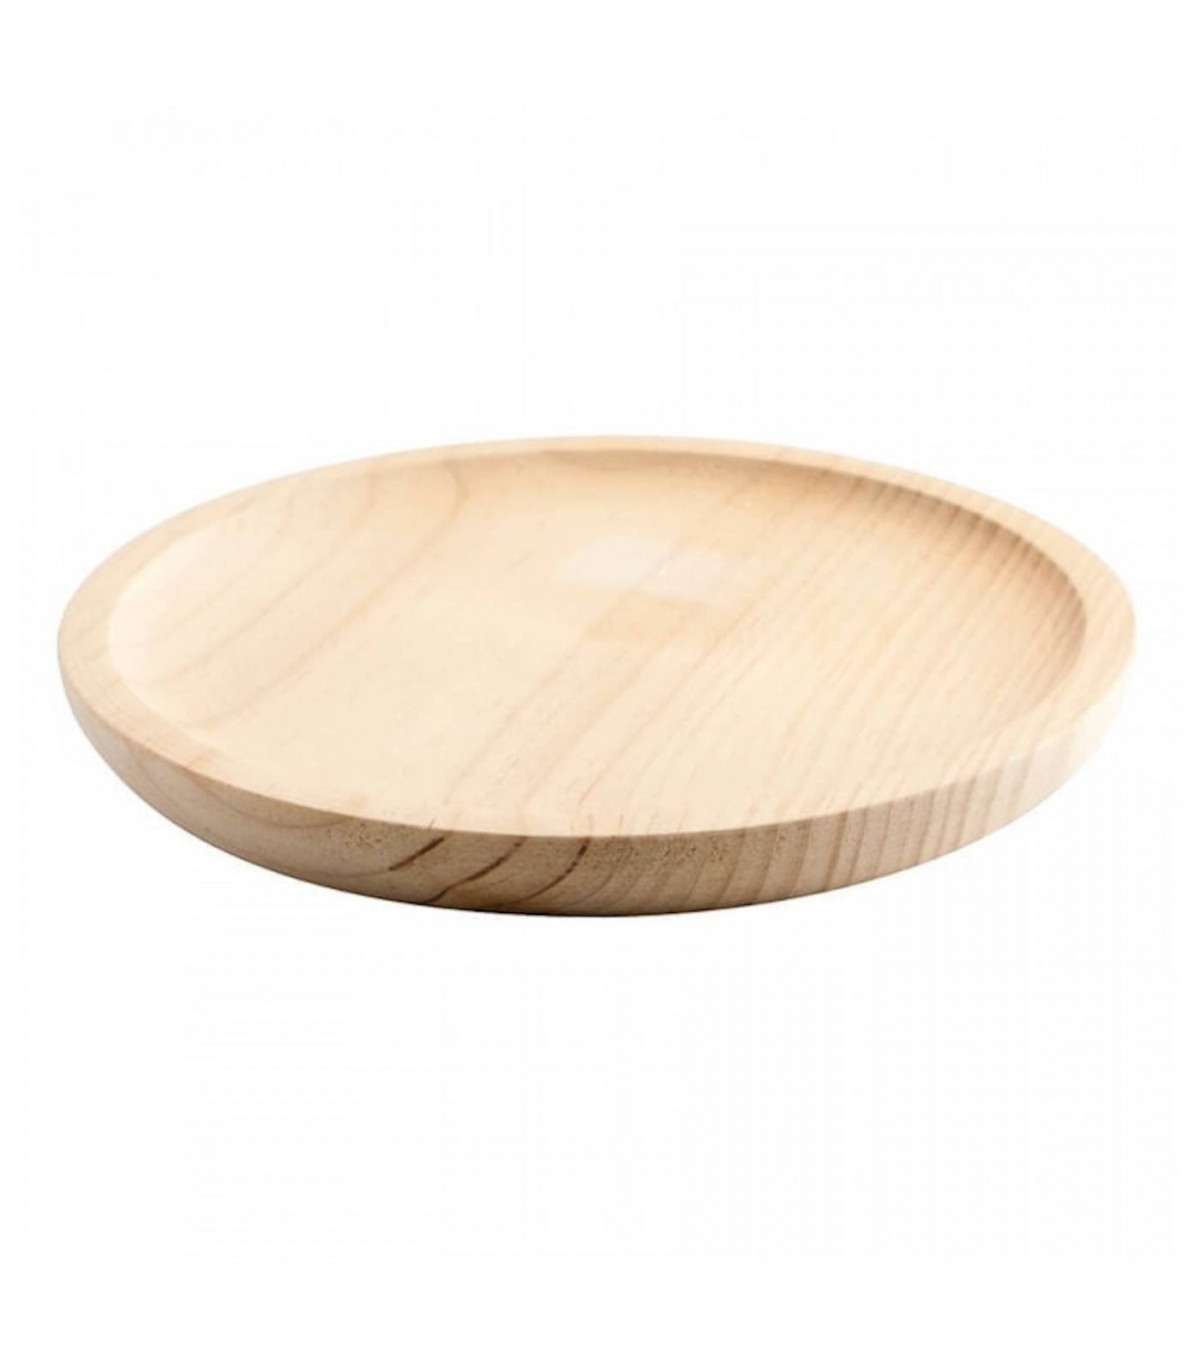 Artema - Pack de 12 platos de madera especial para pulpo, de 13,8 cm de  diámetro, para el hogar o hostelería. Set de 12 recipien